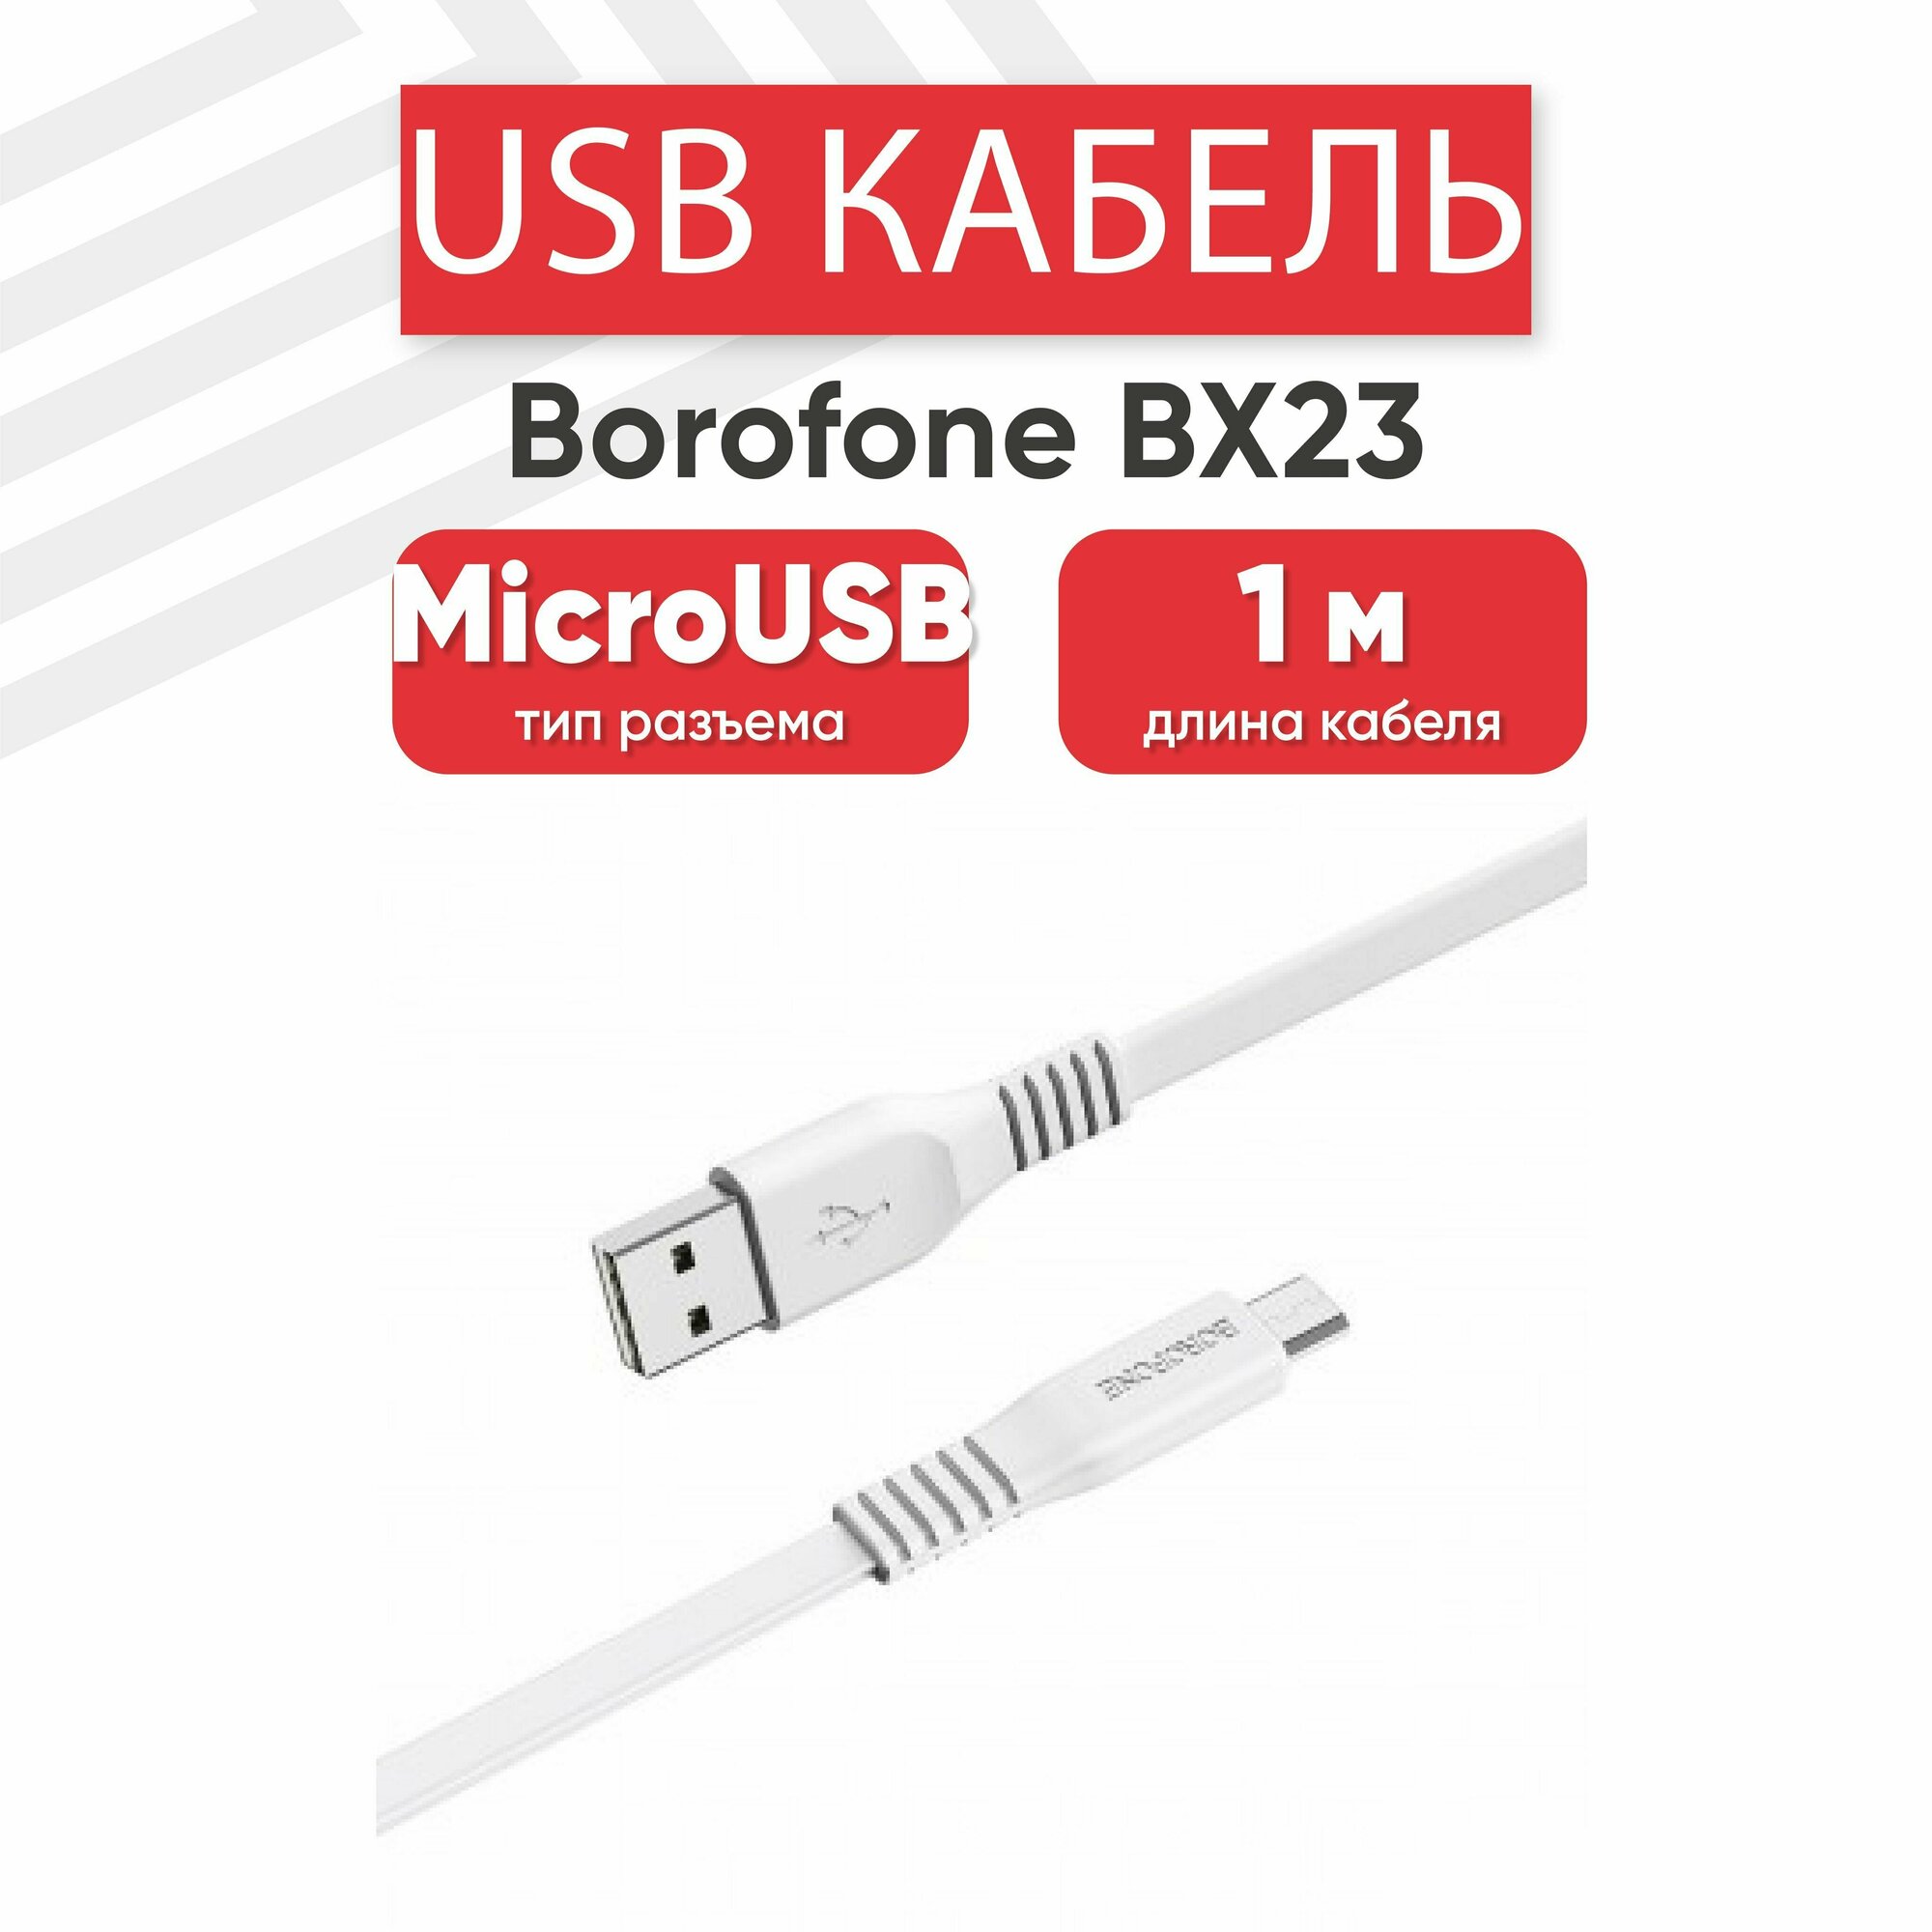 USB кабель Borofone BX23 для зарядки, передачи данных, MicroUSB, 2.4А, 1 метр, PVC, белый